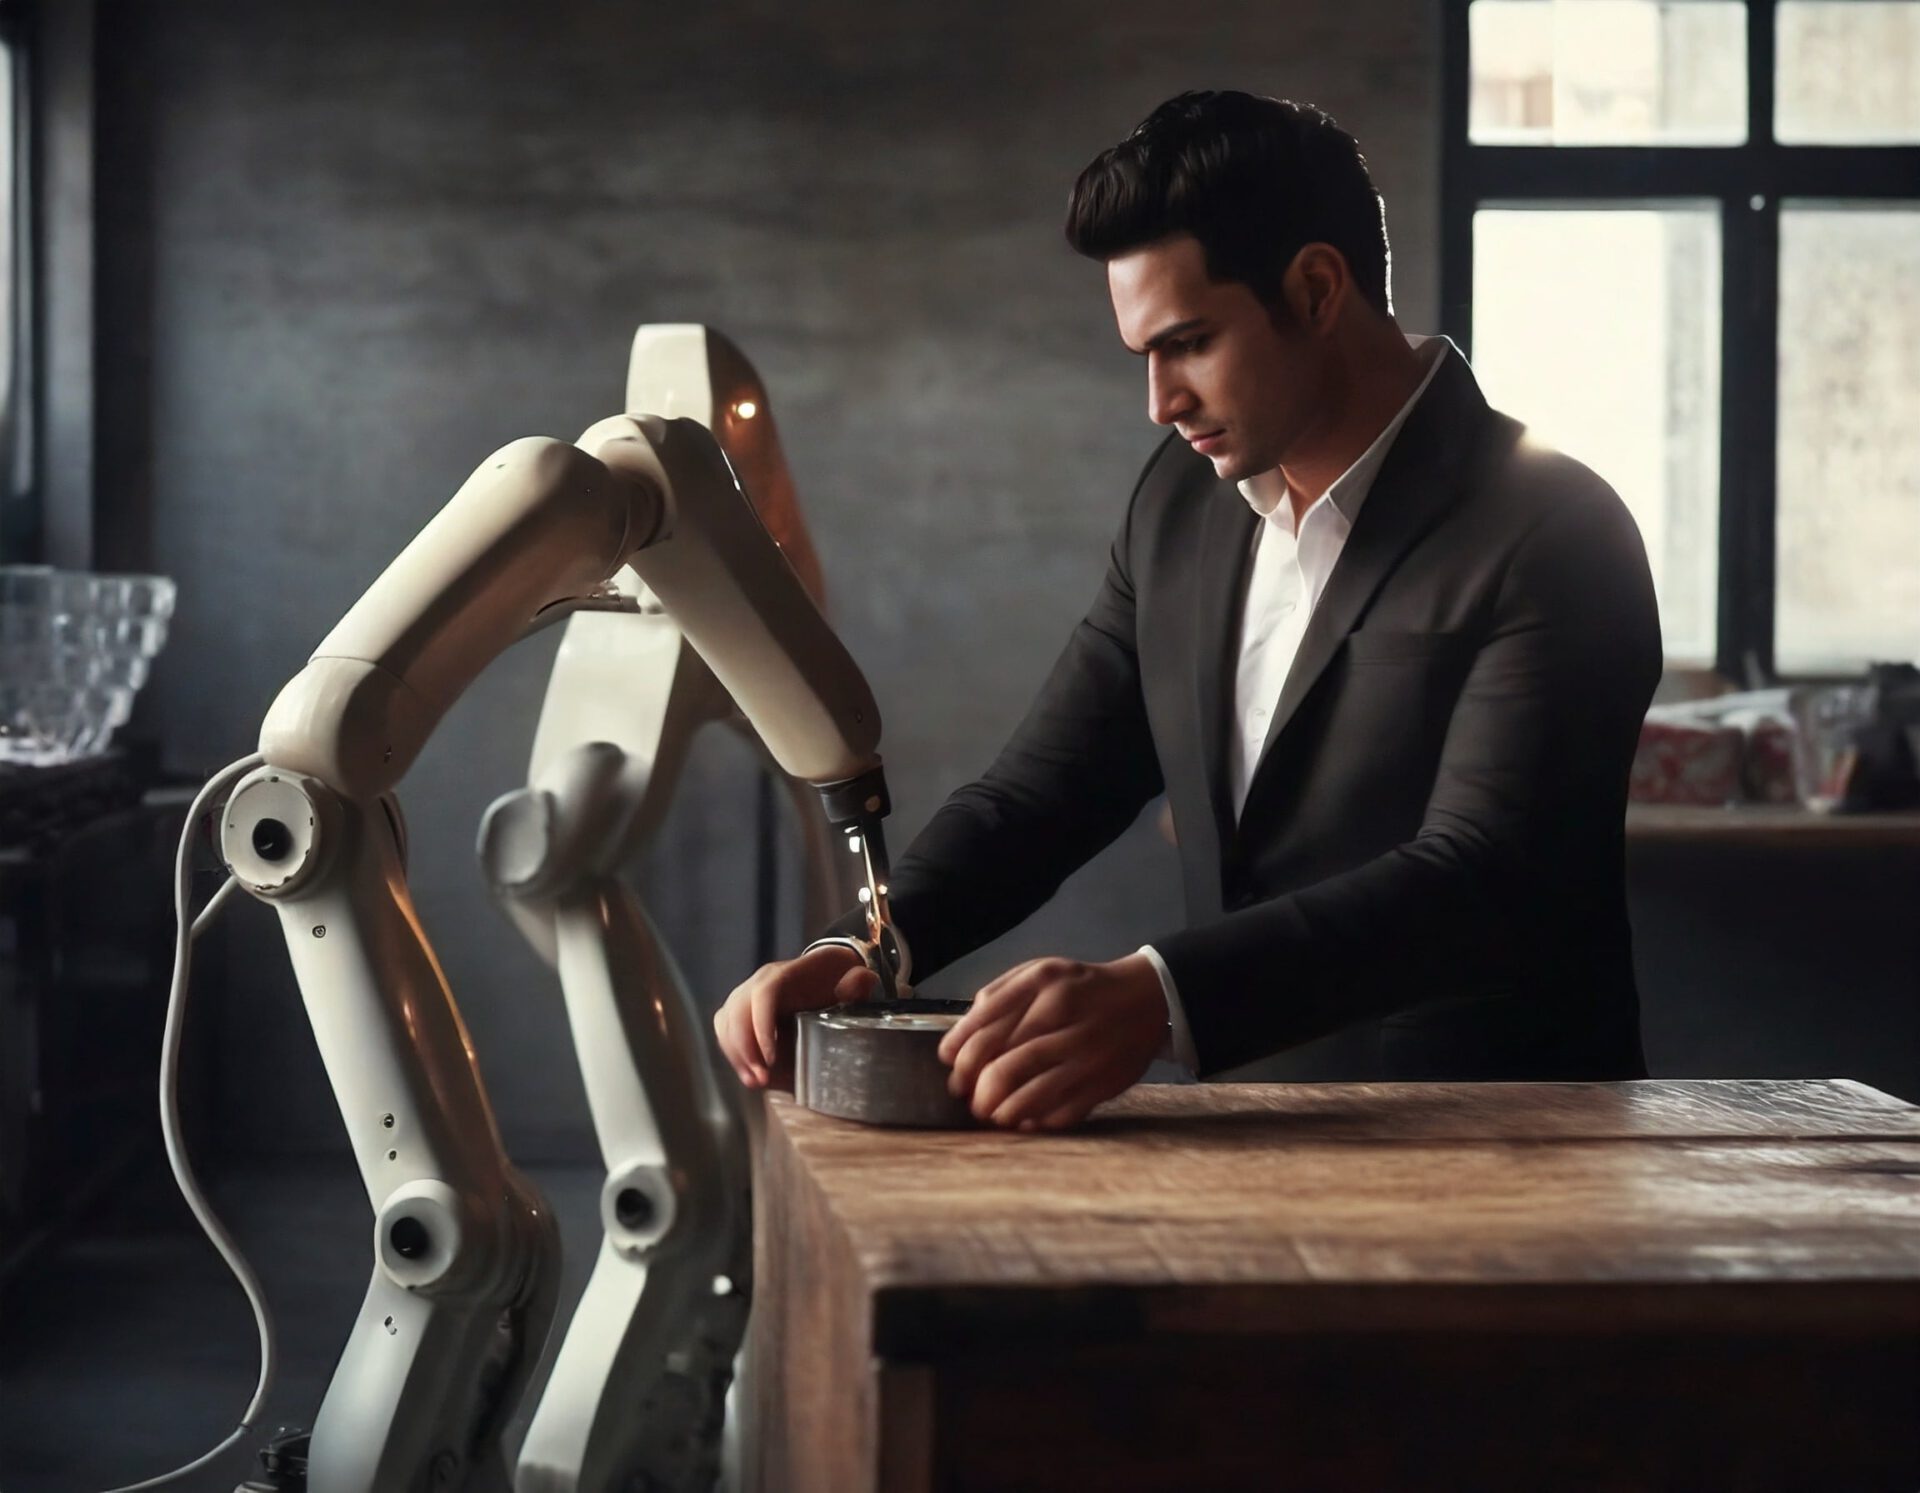 Mensch-Roboter-Kollaboration mit künstlicher Intelligenz